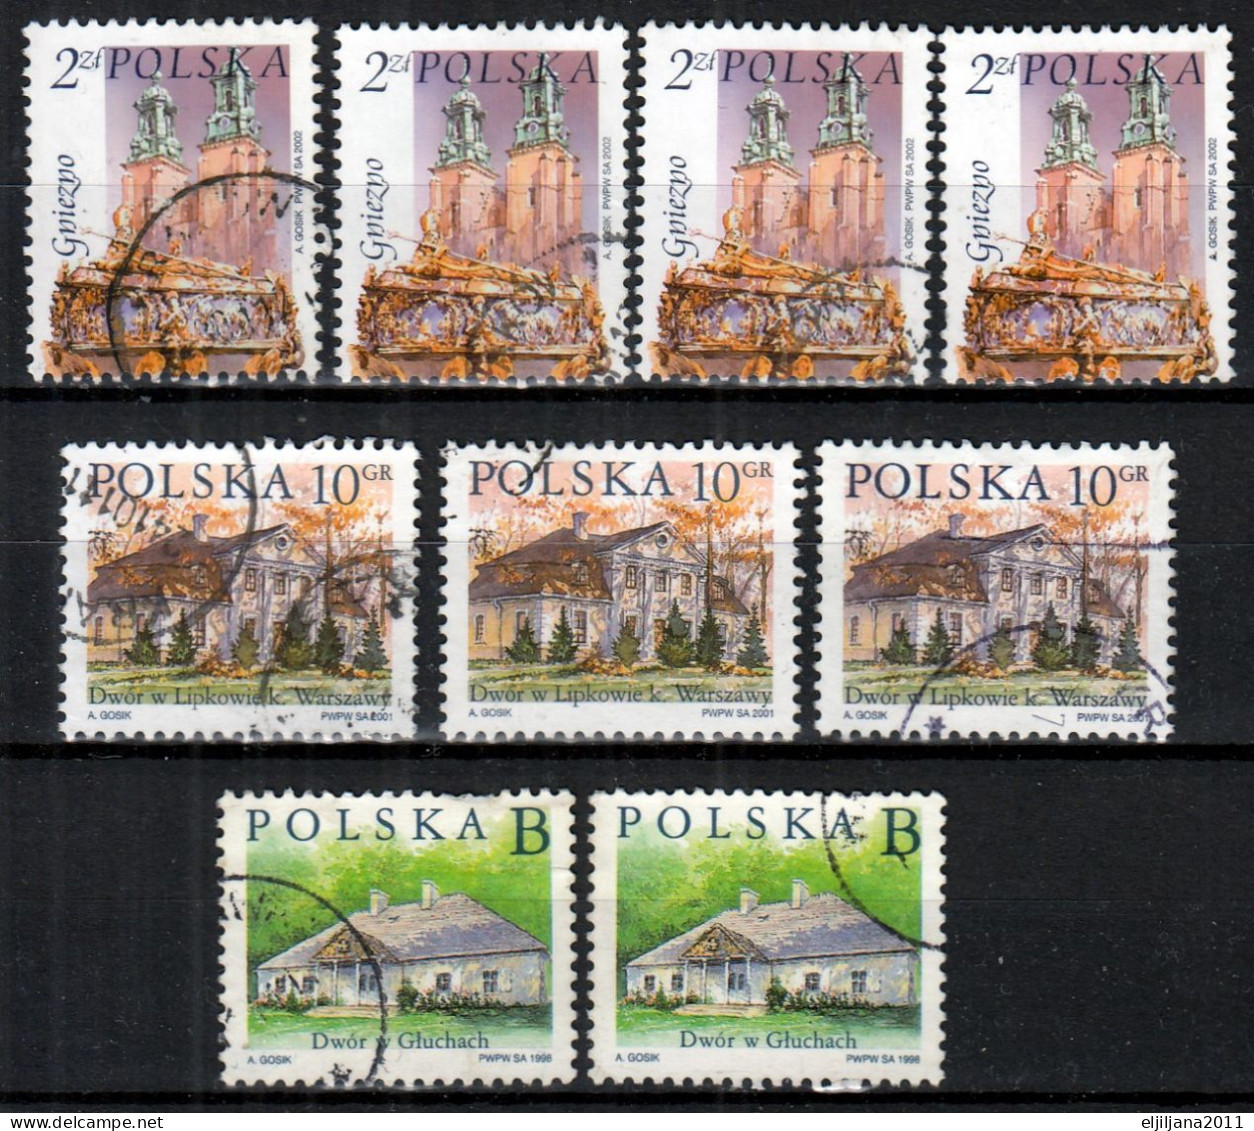 ⁕ Poland / Polska 1998 - 2005 ⁕ Castles - Cities Mi.3693,3882,3890,4199,4212 ⁕ 19v Used - Gebruikt